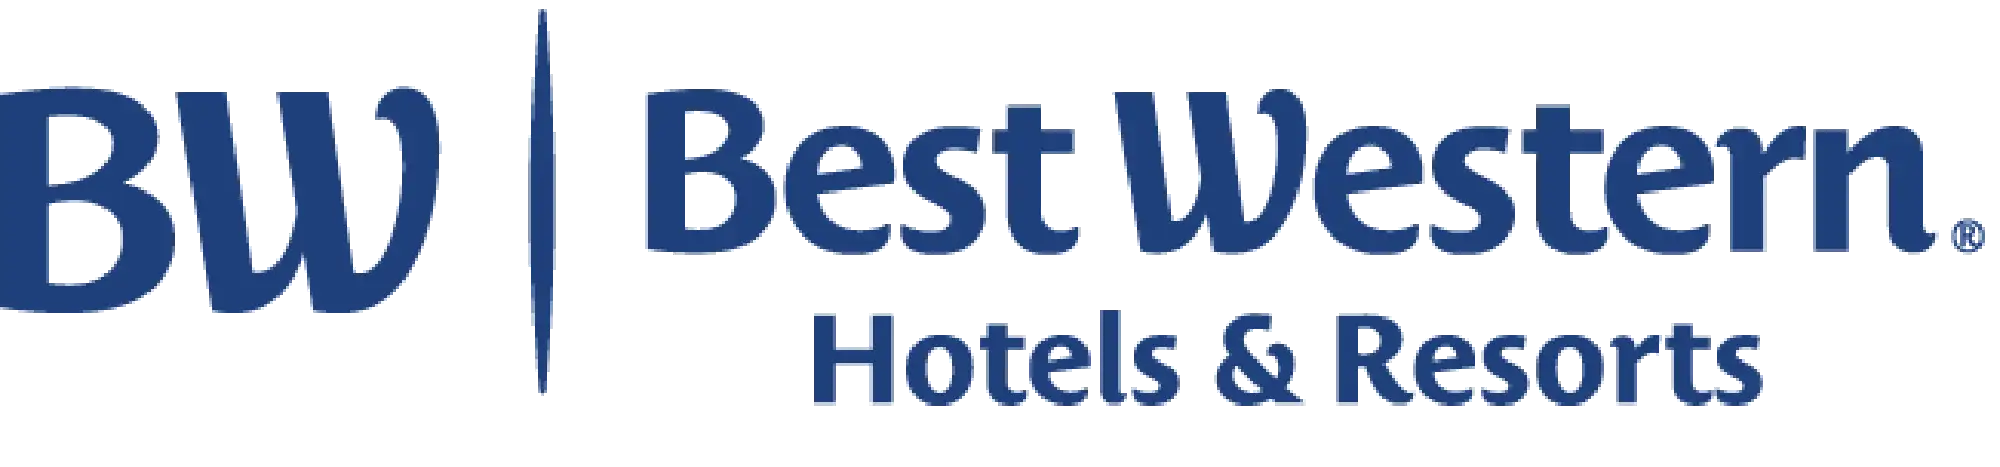 Best Western Hotels & Resort Logo für Bahn und Hotel